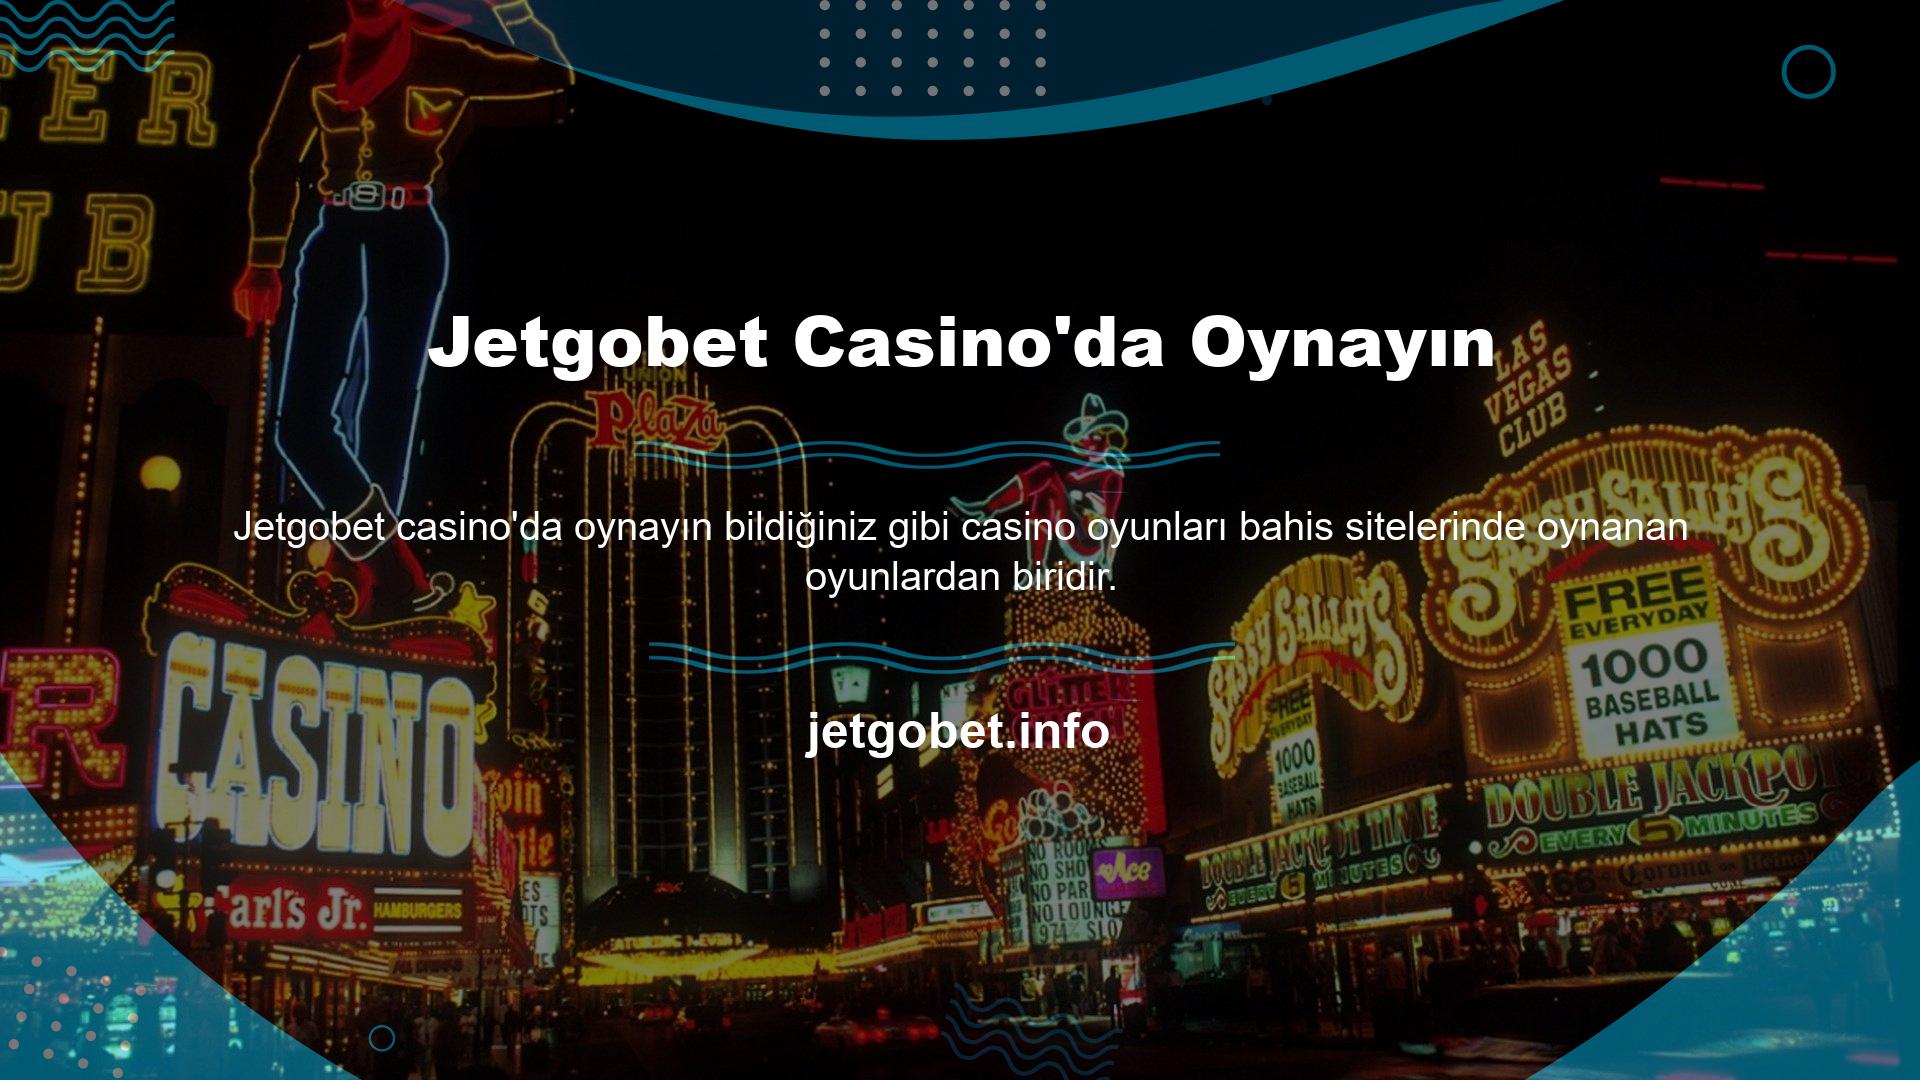 Günümüzde birçok bahisçi Jetgobet Casino'ya üye olmak ve düzenli olarak oynamak istemektedir